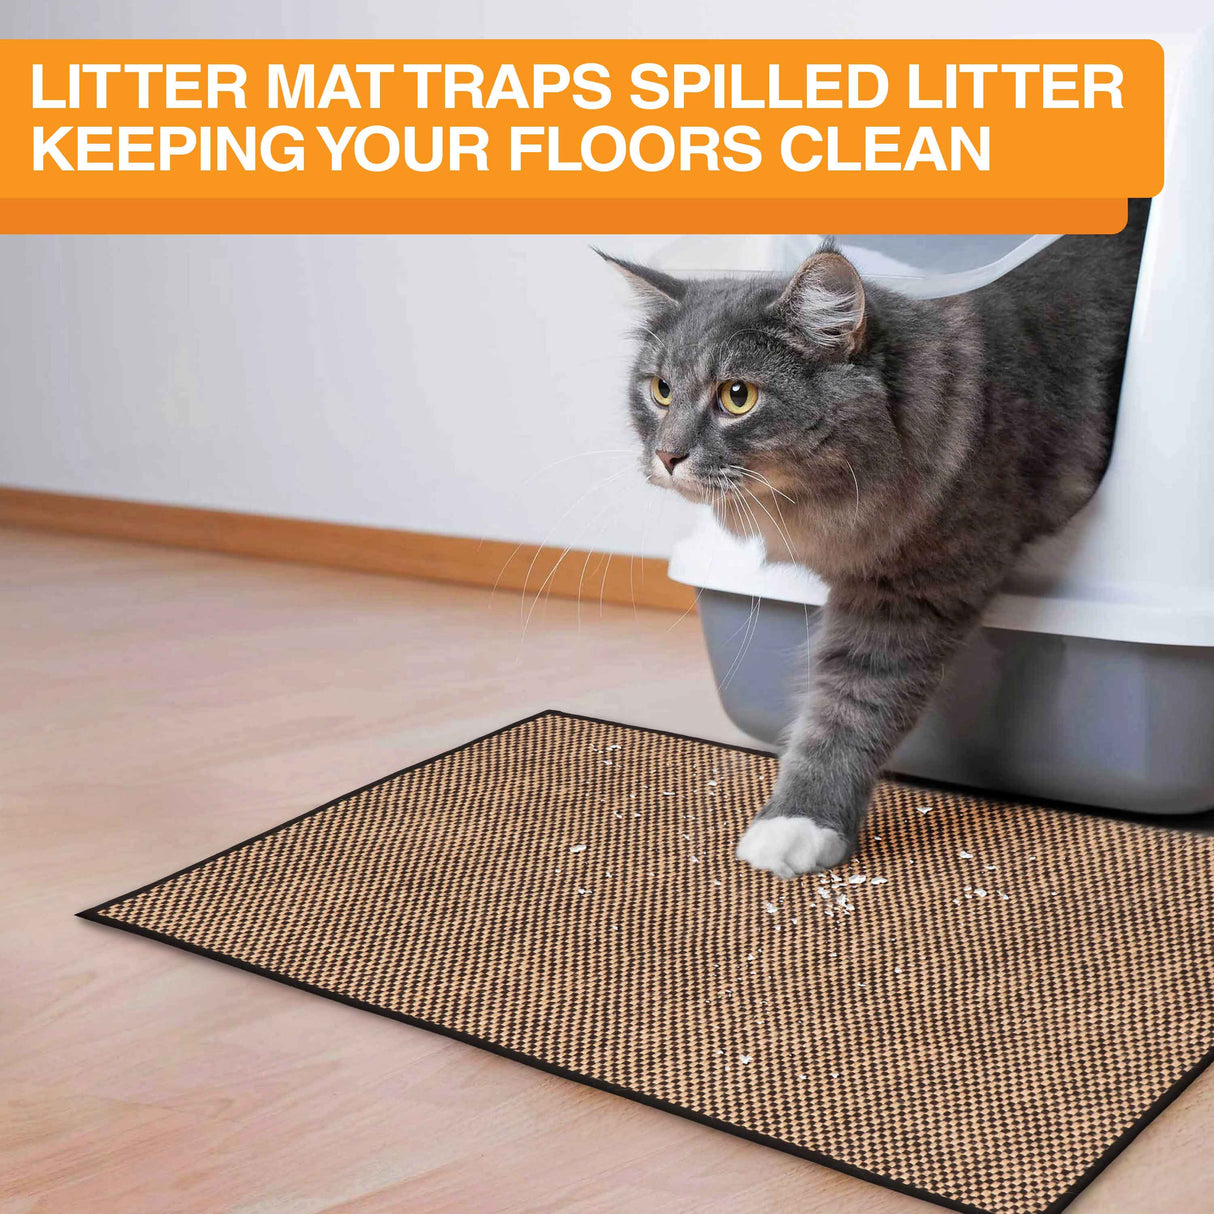 Checkered mat traps spilled litter